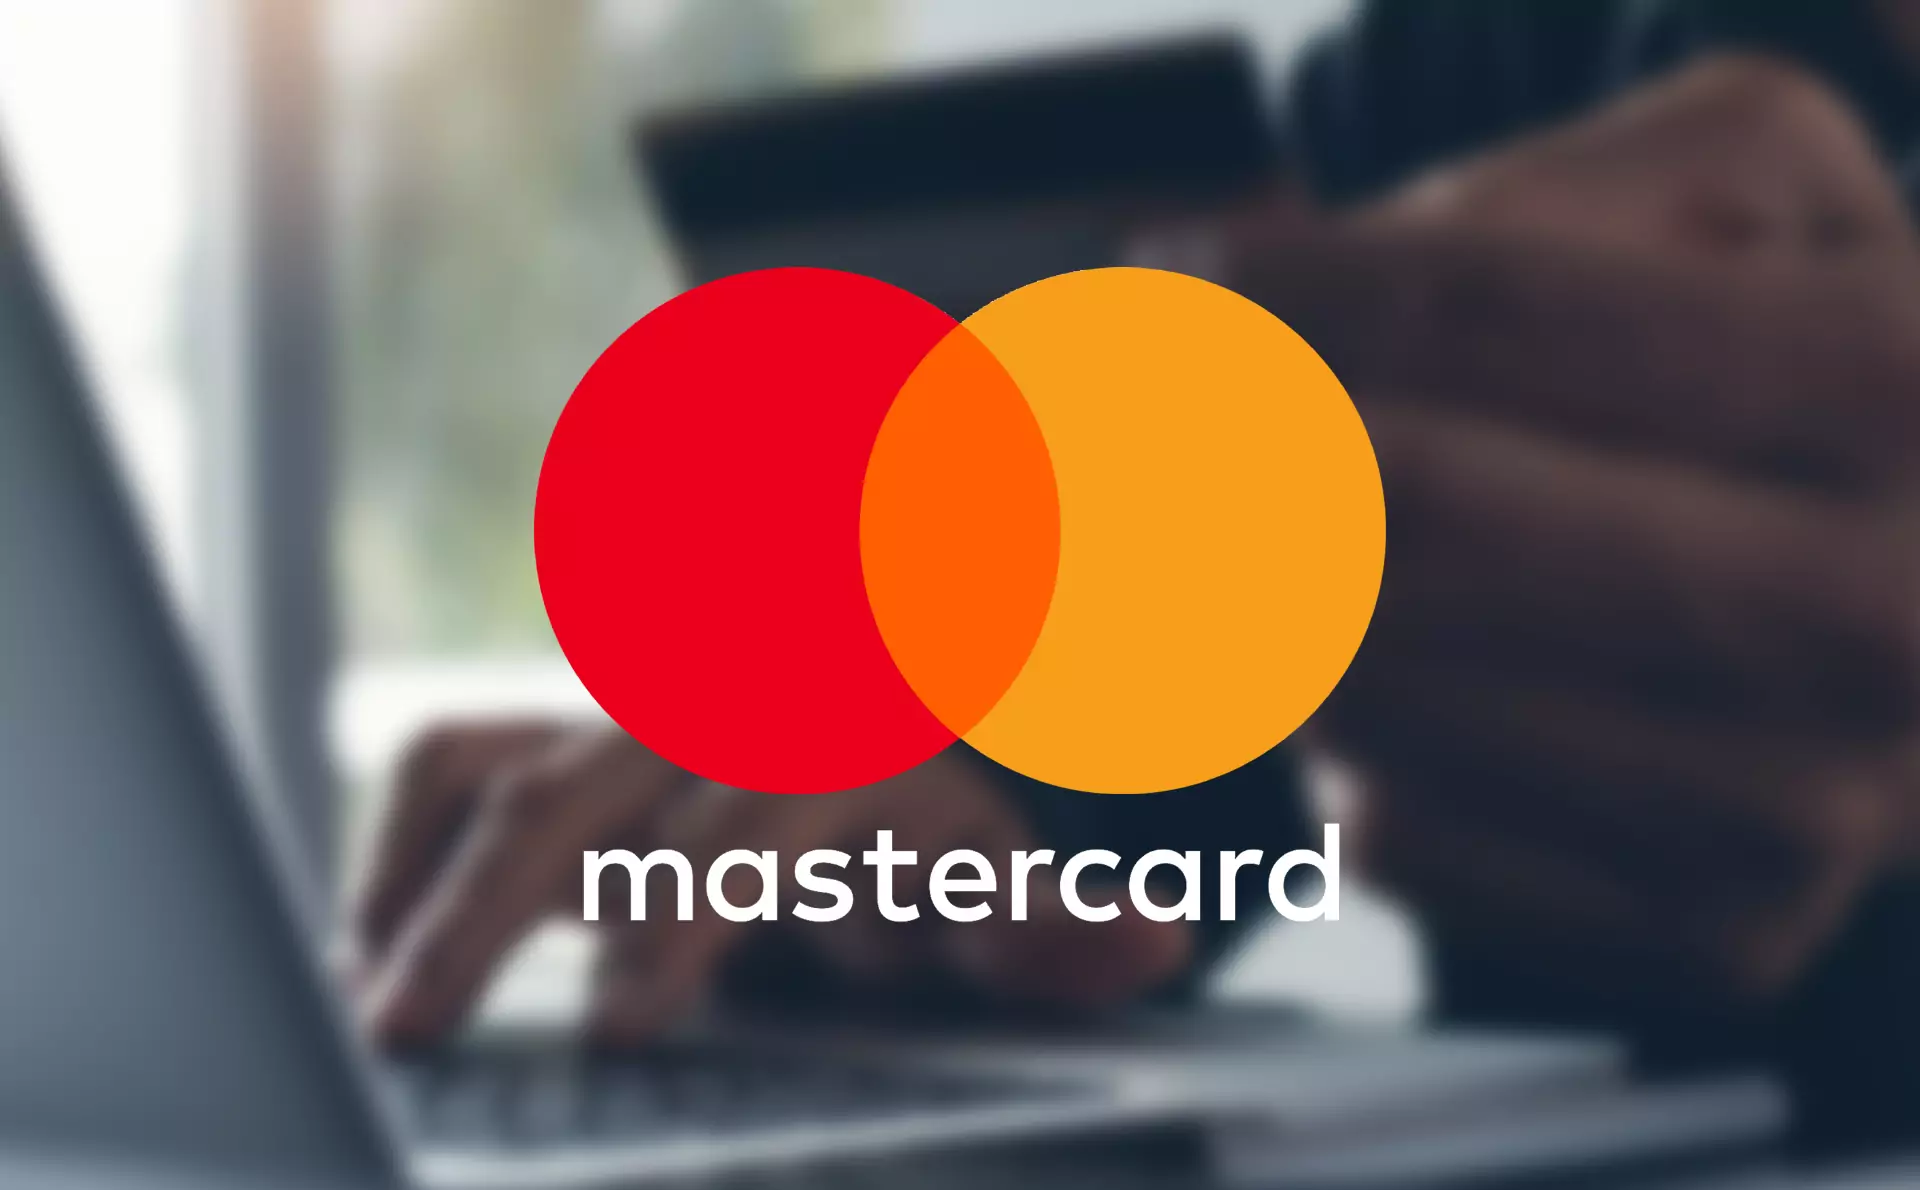 Mastercard एक महान प्रतिष्ठा के साथ एक अच्छी तरह से सम्मानित भुगतान प्रणाली है।